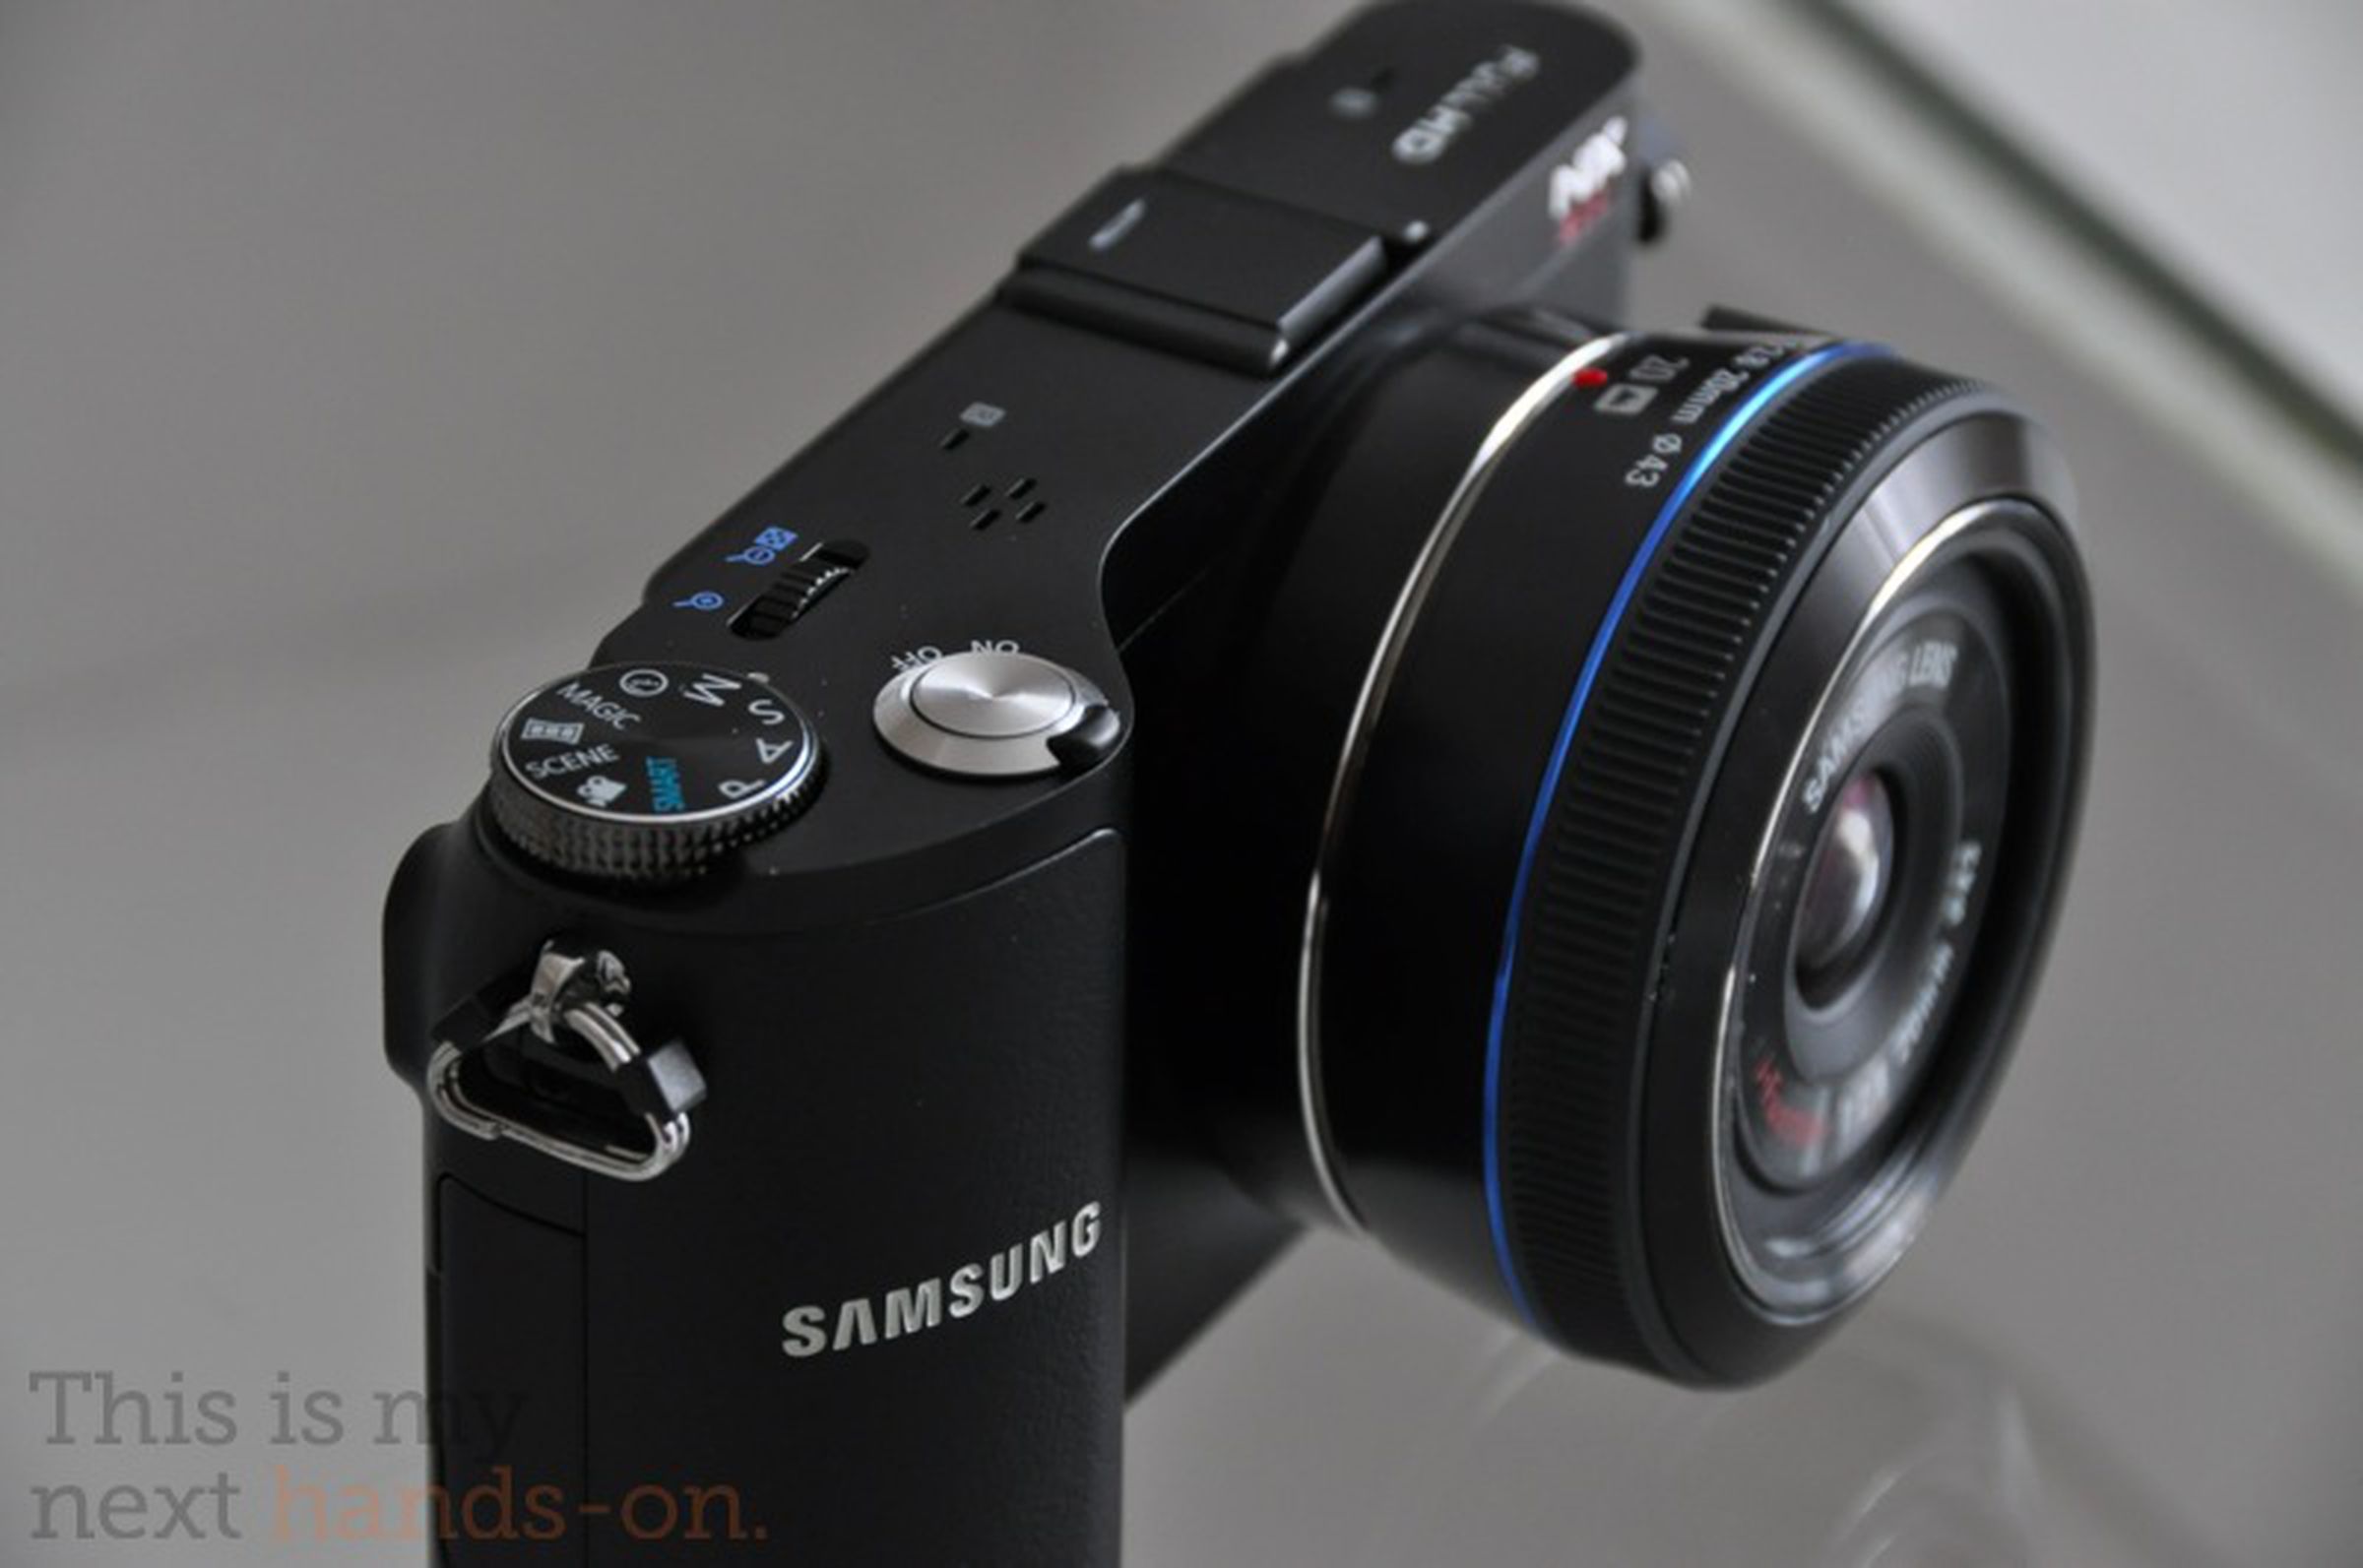 Samsung NX200 hands-on photos